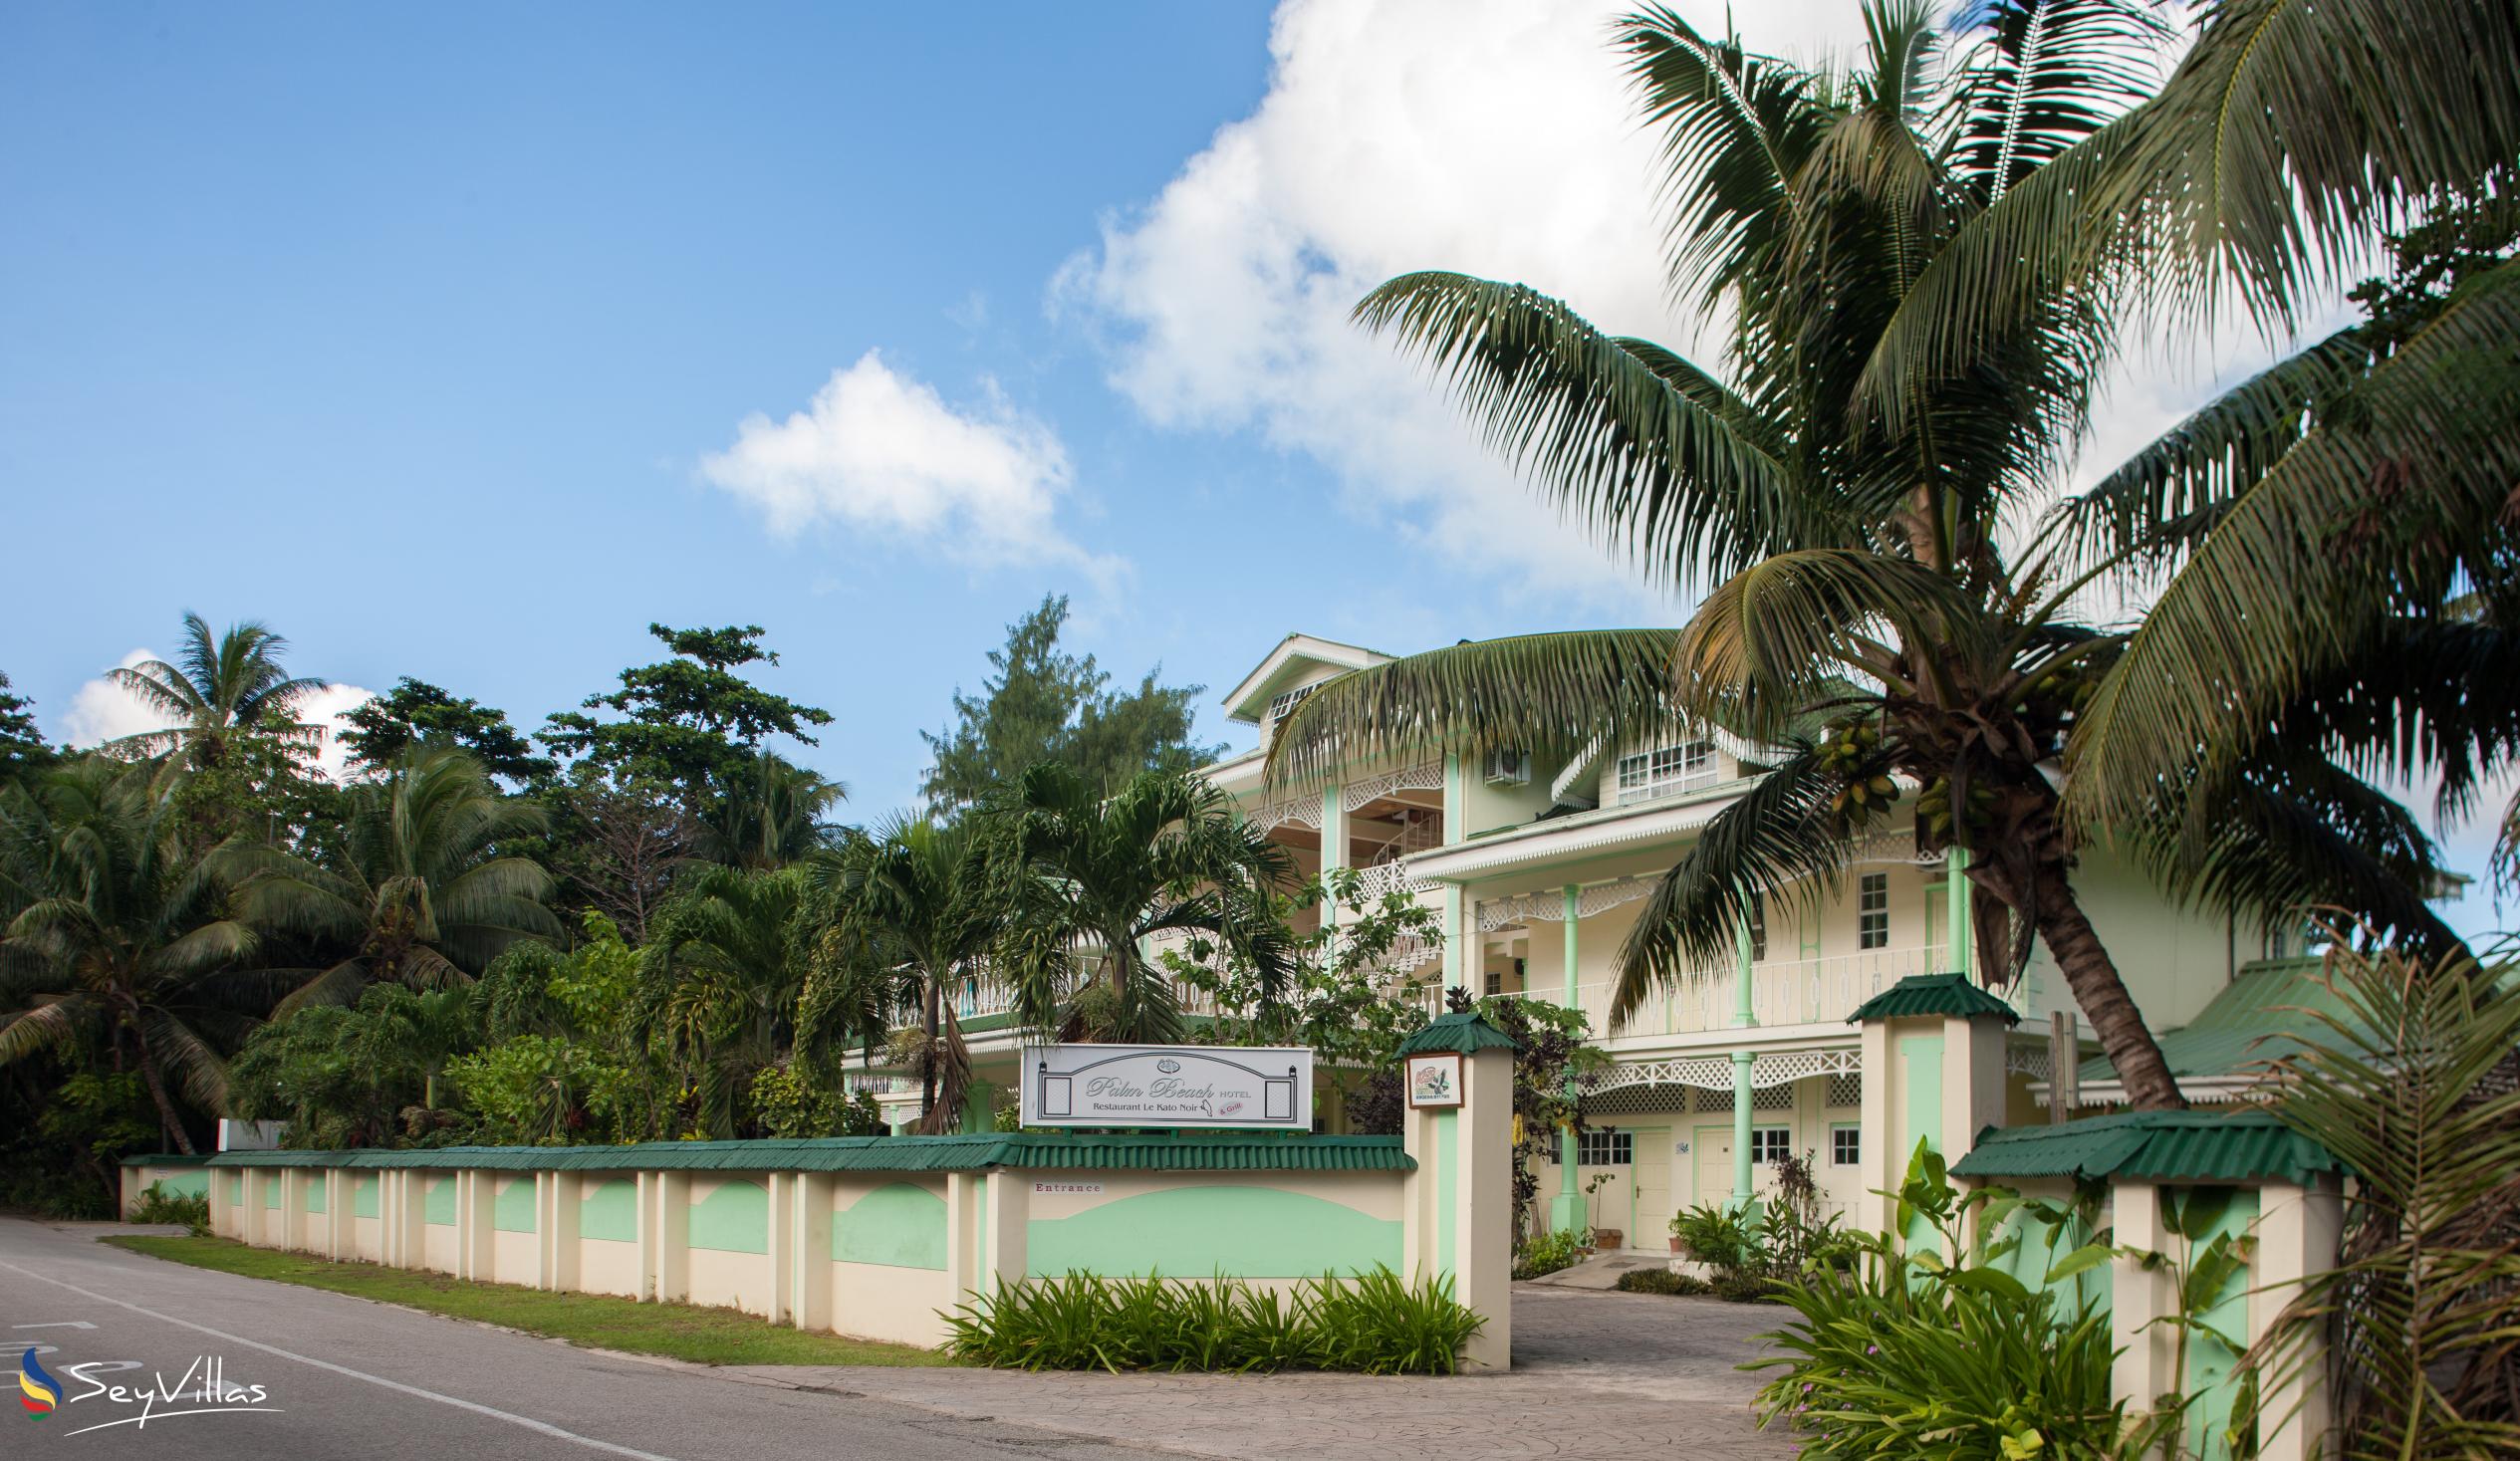 Foto 4: Palm Beach Hotel - Aussenbereich - Praslin (Seychellen)